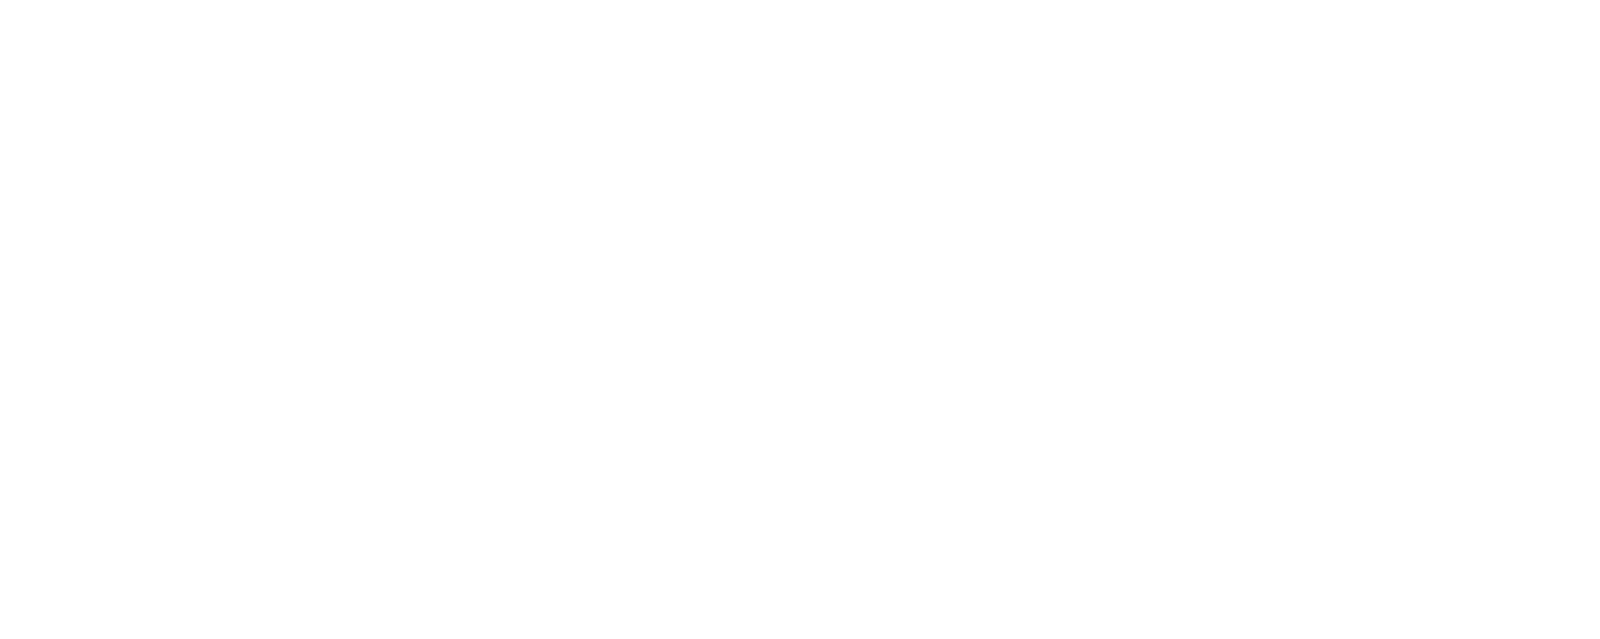 OCI logo for dark backgrounds (transparent PNG)